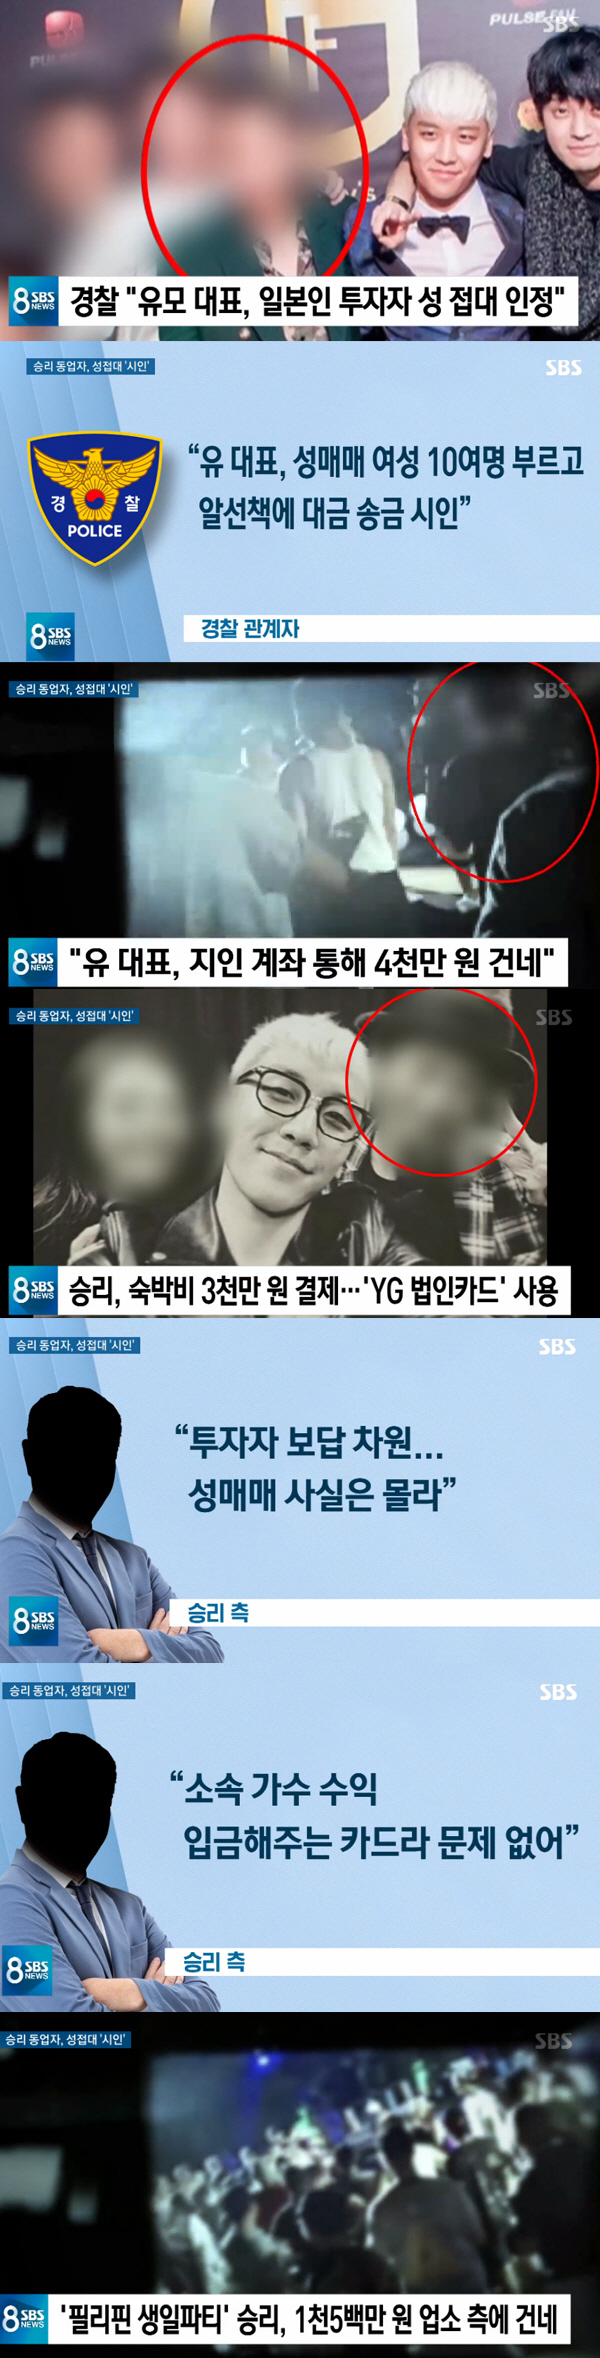 '8뉴스' 유인석 "日투자자 성 접대" VS 승리 "YG 법인 카드·성매…